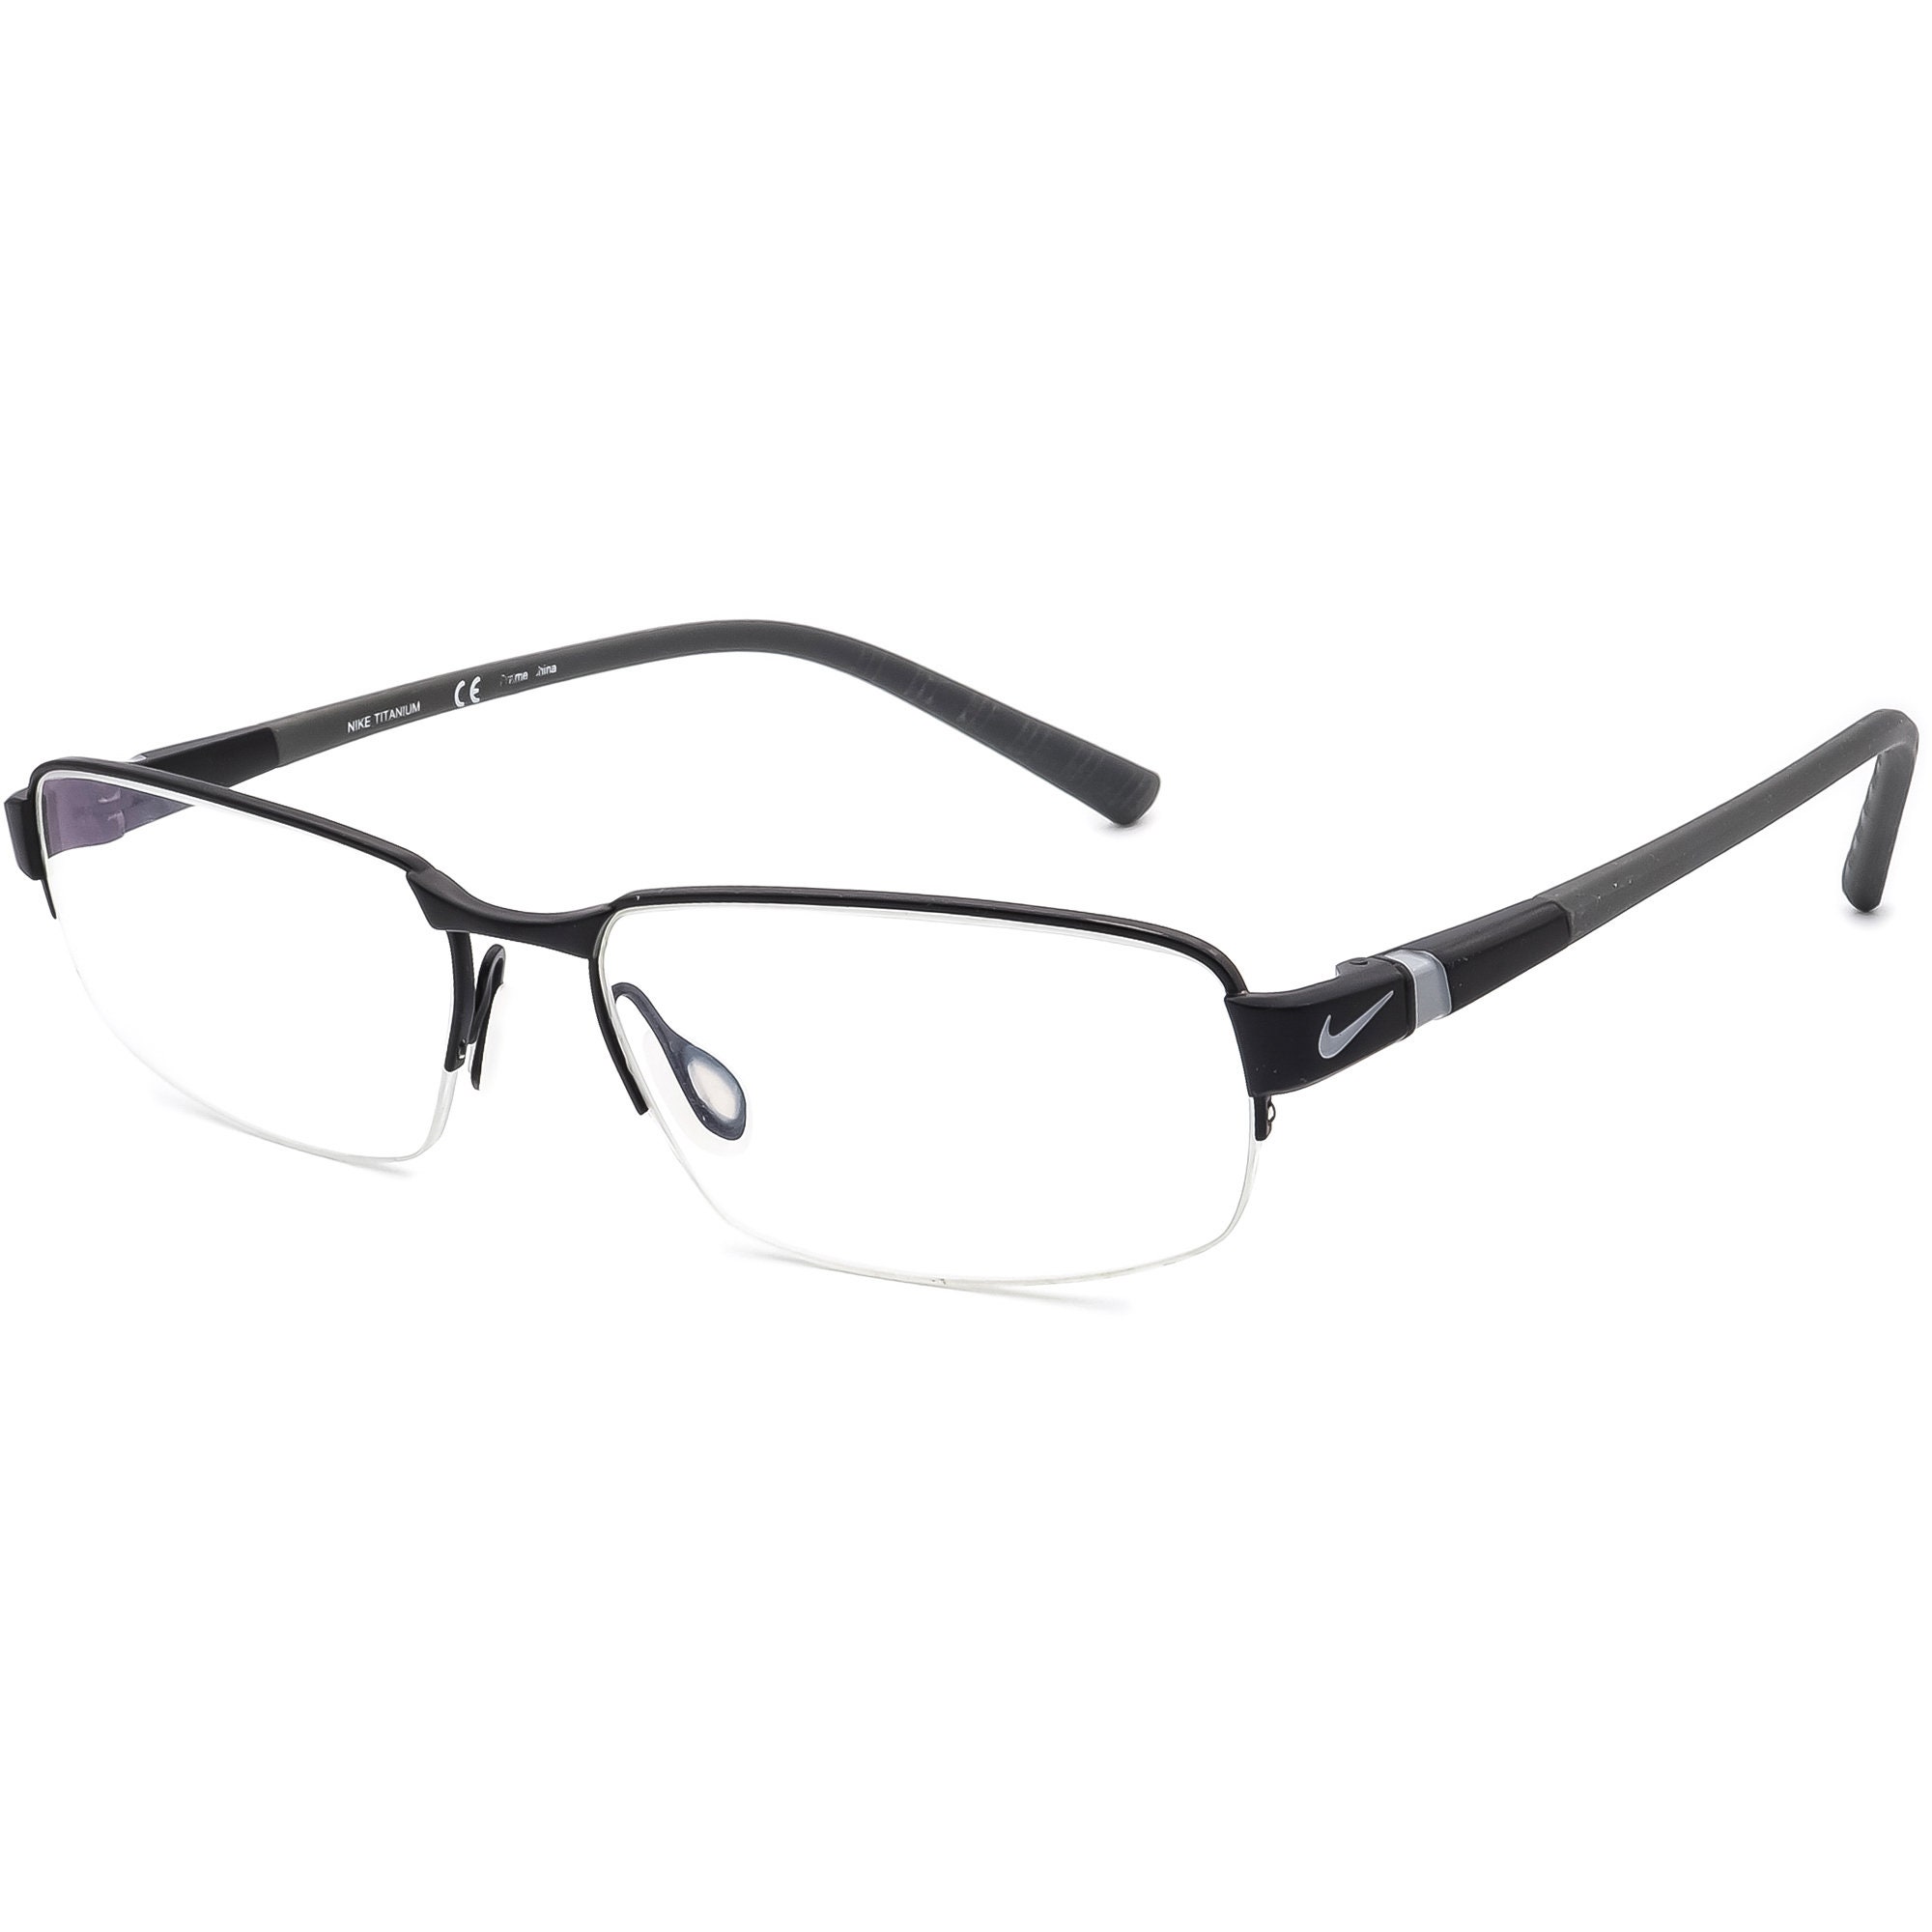 Zeeziekte Correctie eerlijk Nike Eyeglasses 6051 009 Titanium Black/matte Gray Half Rim - Etsy